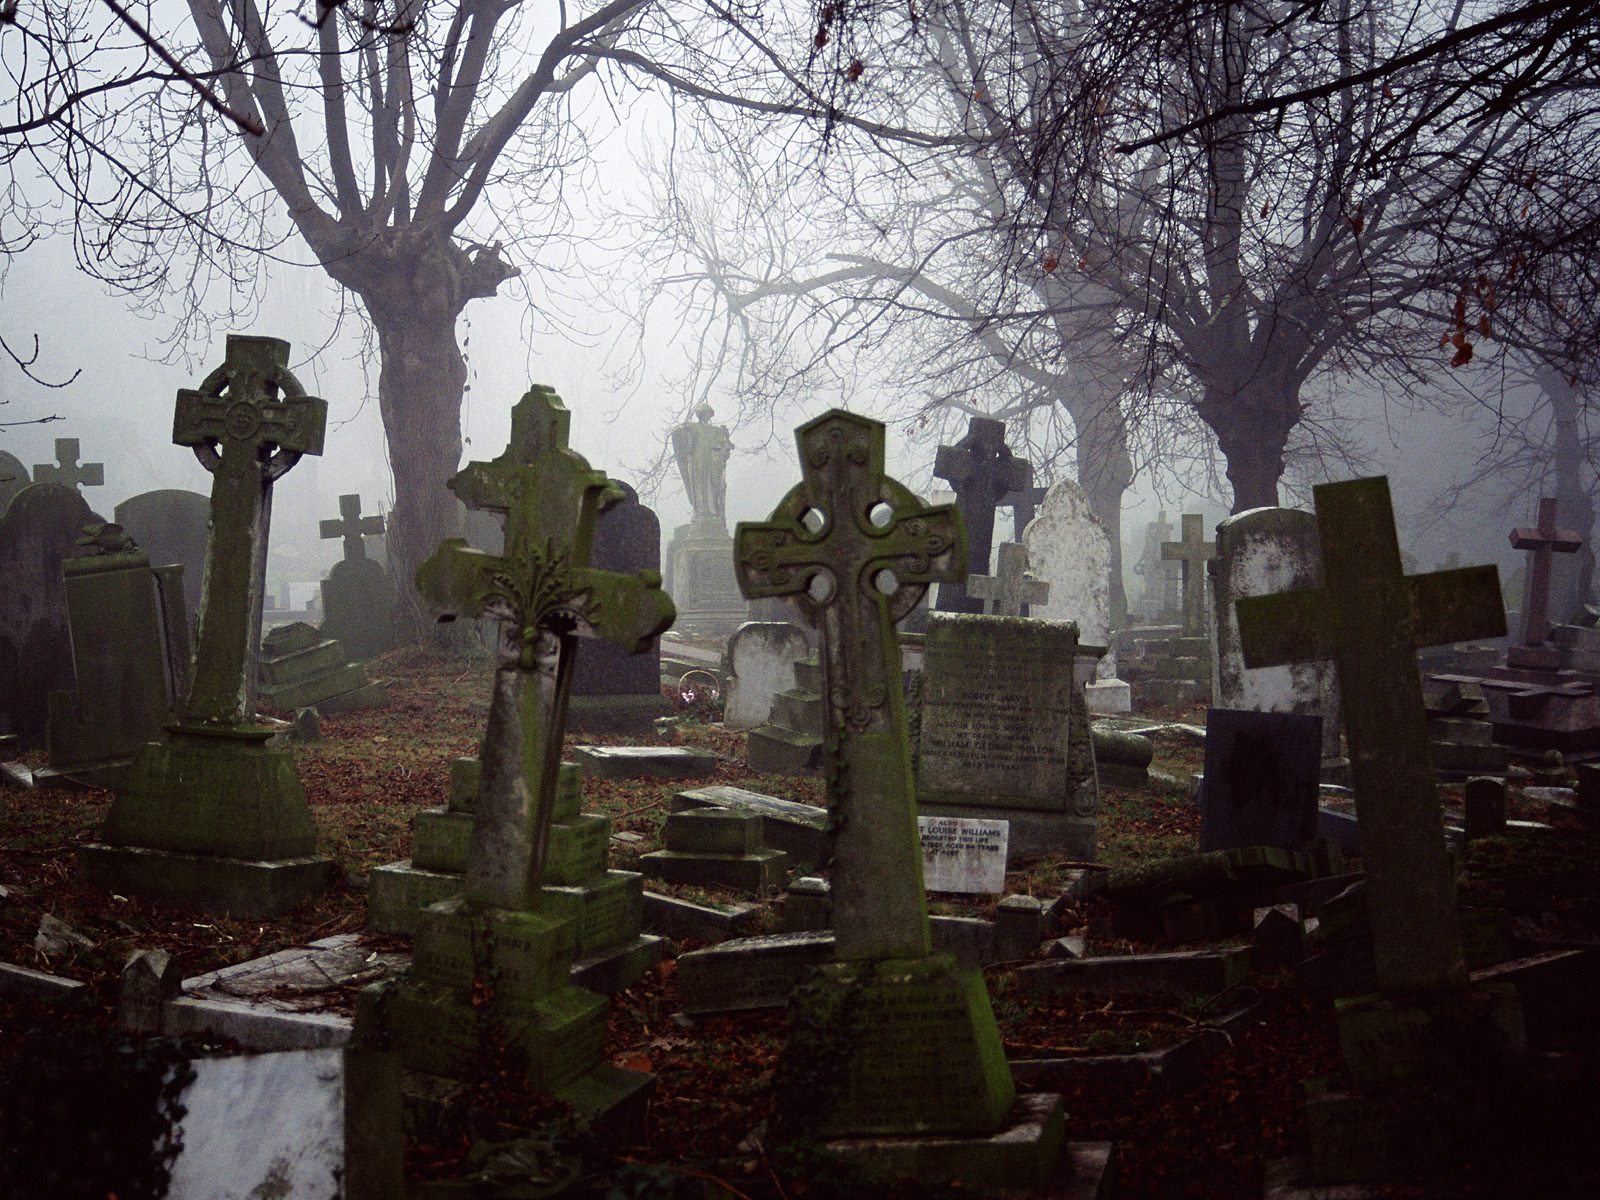 Cemetery Creepy Graveyard